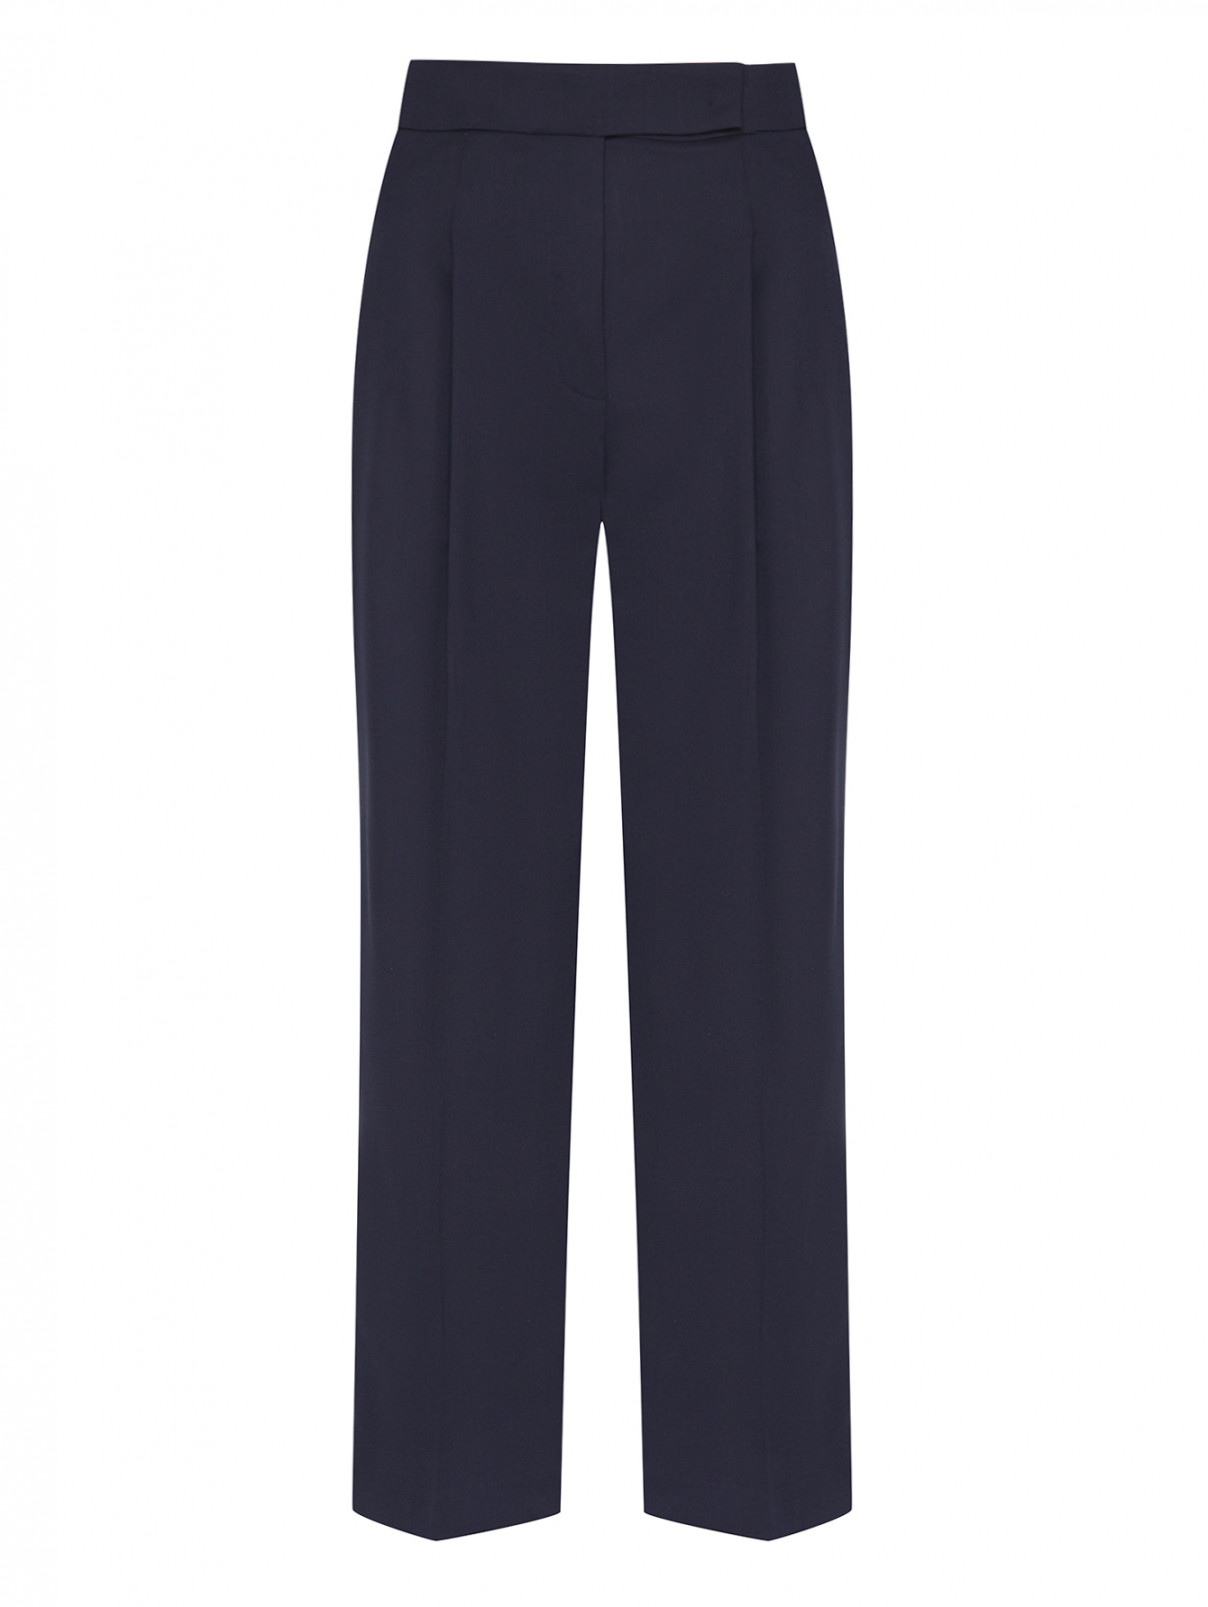 Свободные брюки с защипами Luisa Spagnoli  –  Общий вид  – Цвет:  Черный